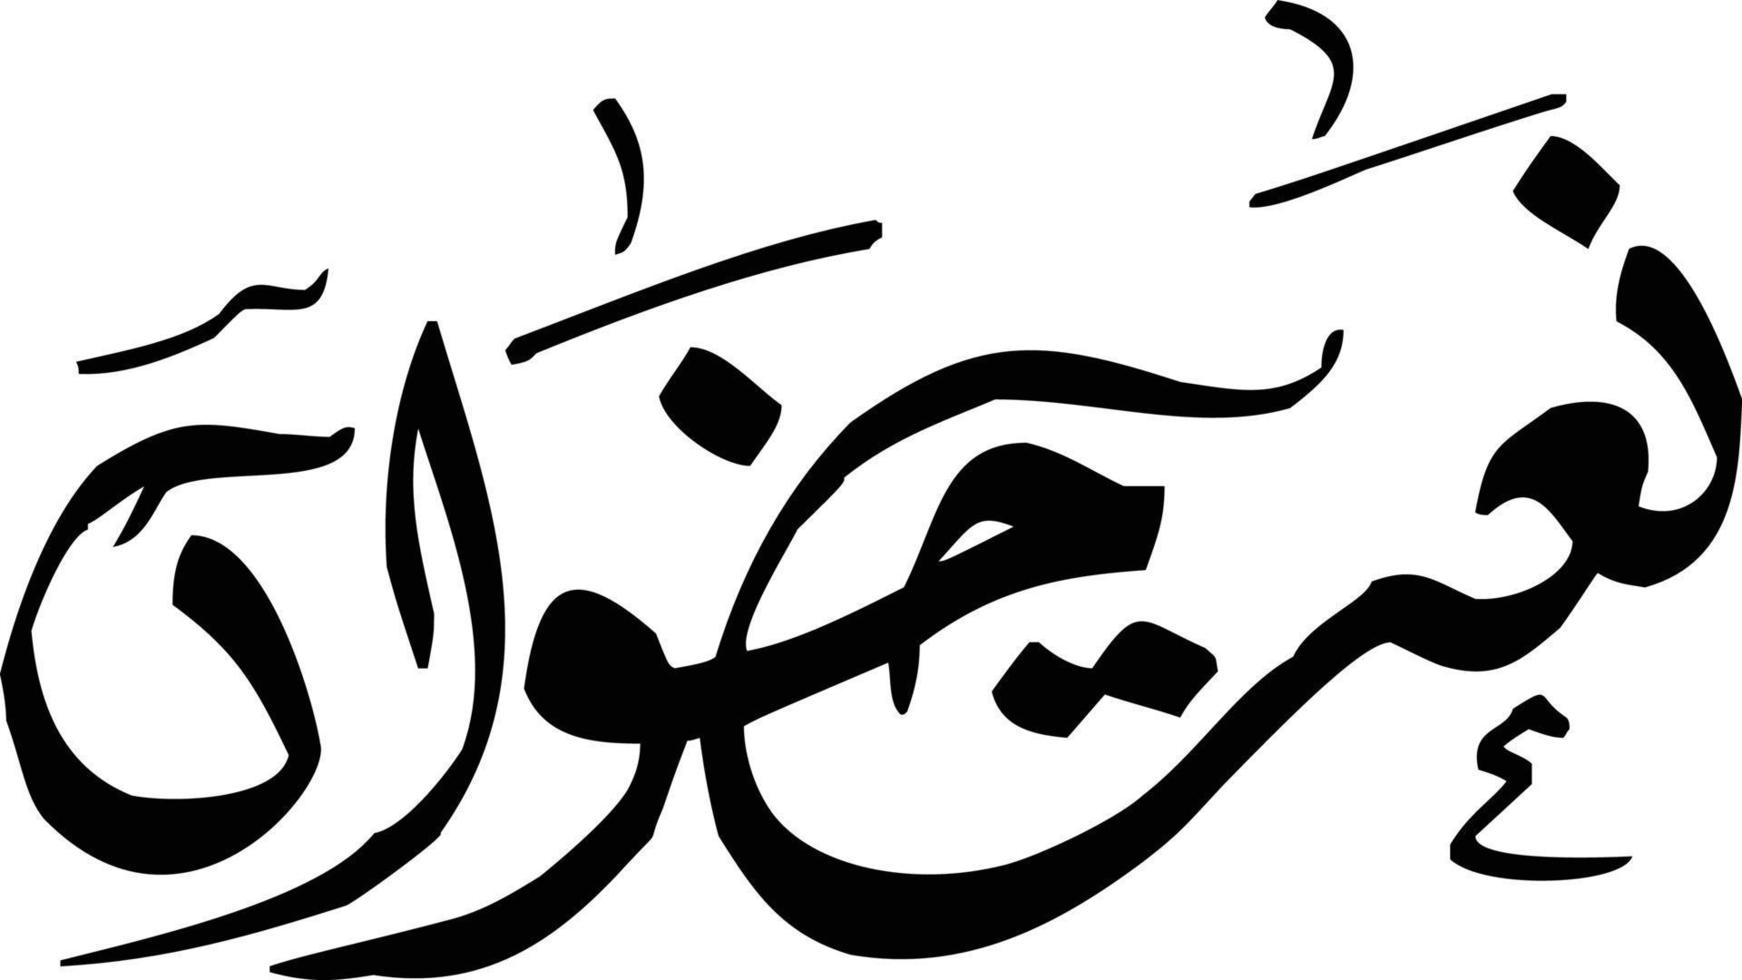 naat khawa título caligrafia islâmica vetor livre